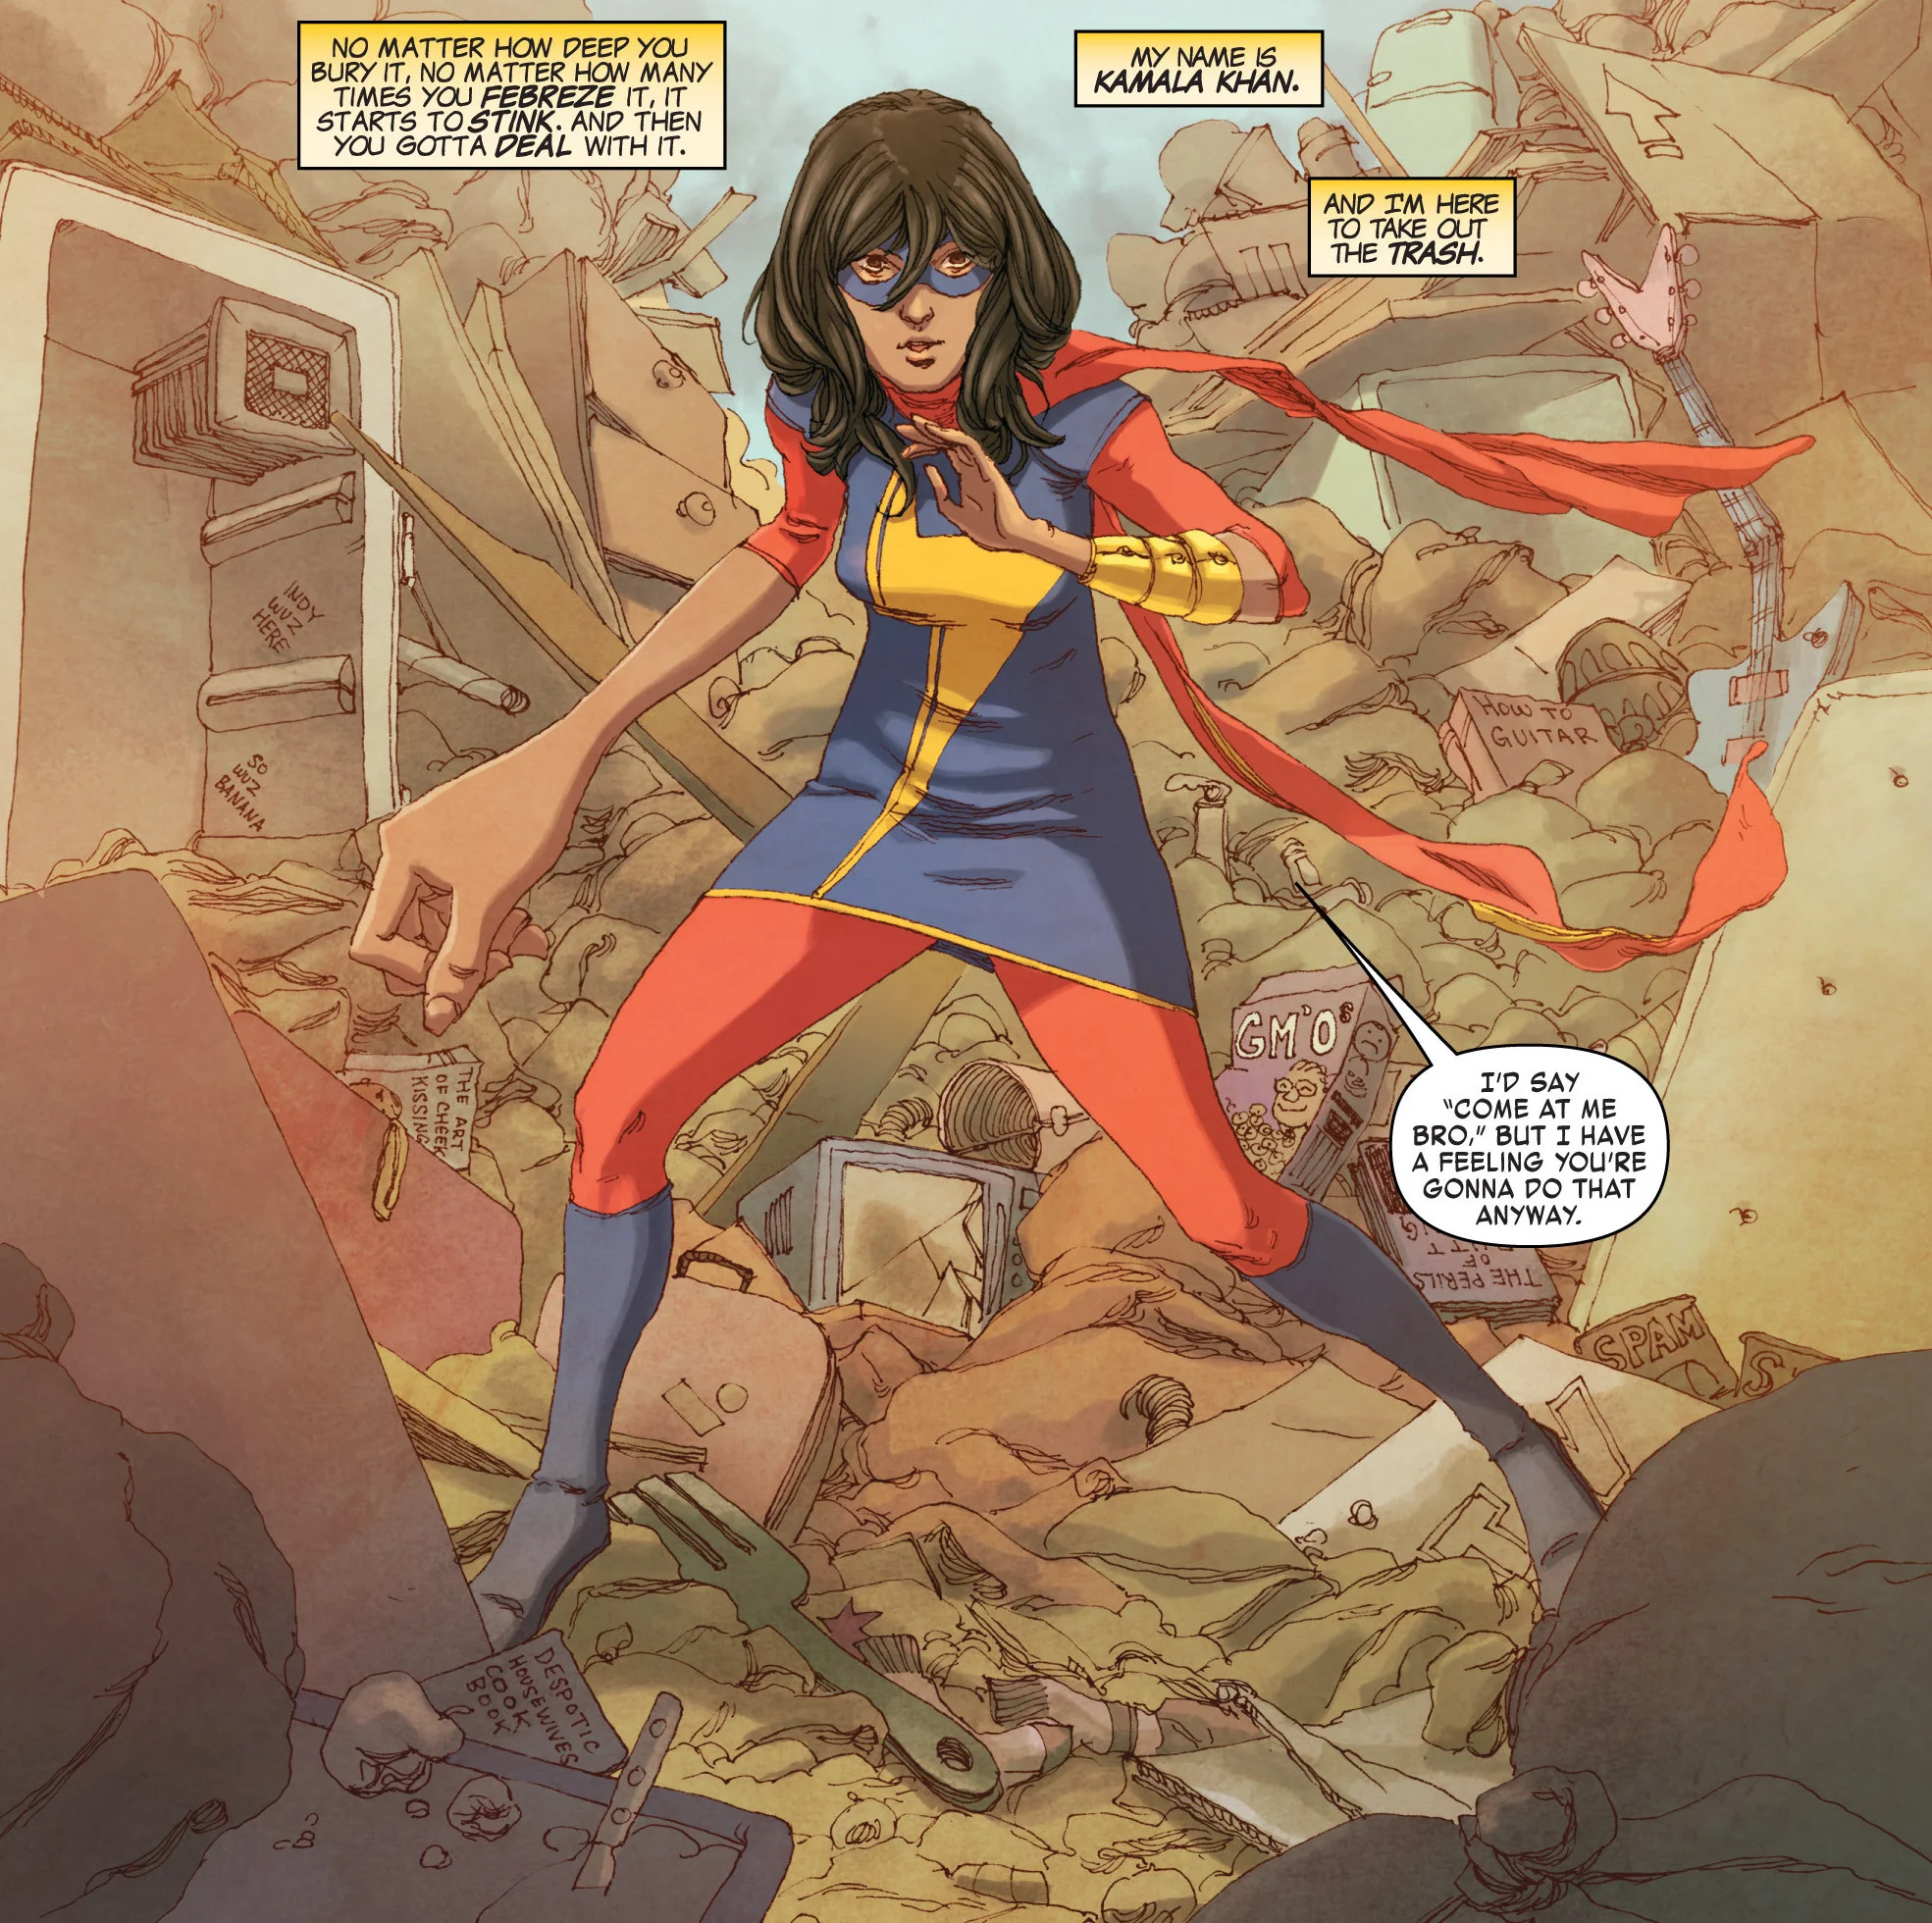 Впервые Камала Хан появилась в комиксе Captain Marvel vol 7 #14, где было лишь небольшое камео, чуть позже, в All-New Marvel NOW! Point One #1, в образе Мисс Марвел, а полноценно ее историю рассказали уже в серии Ms. Marvel vol 3.